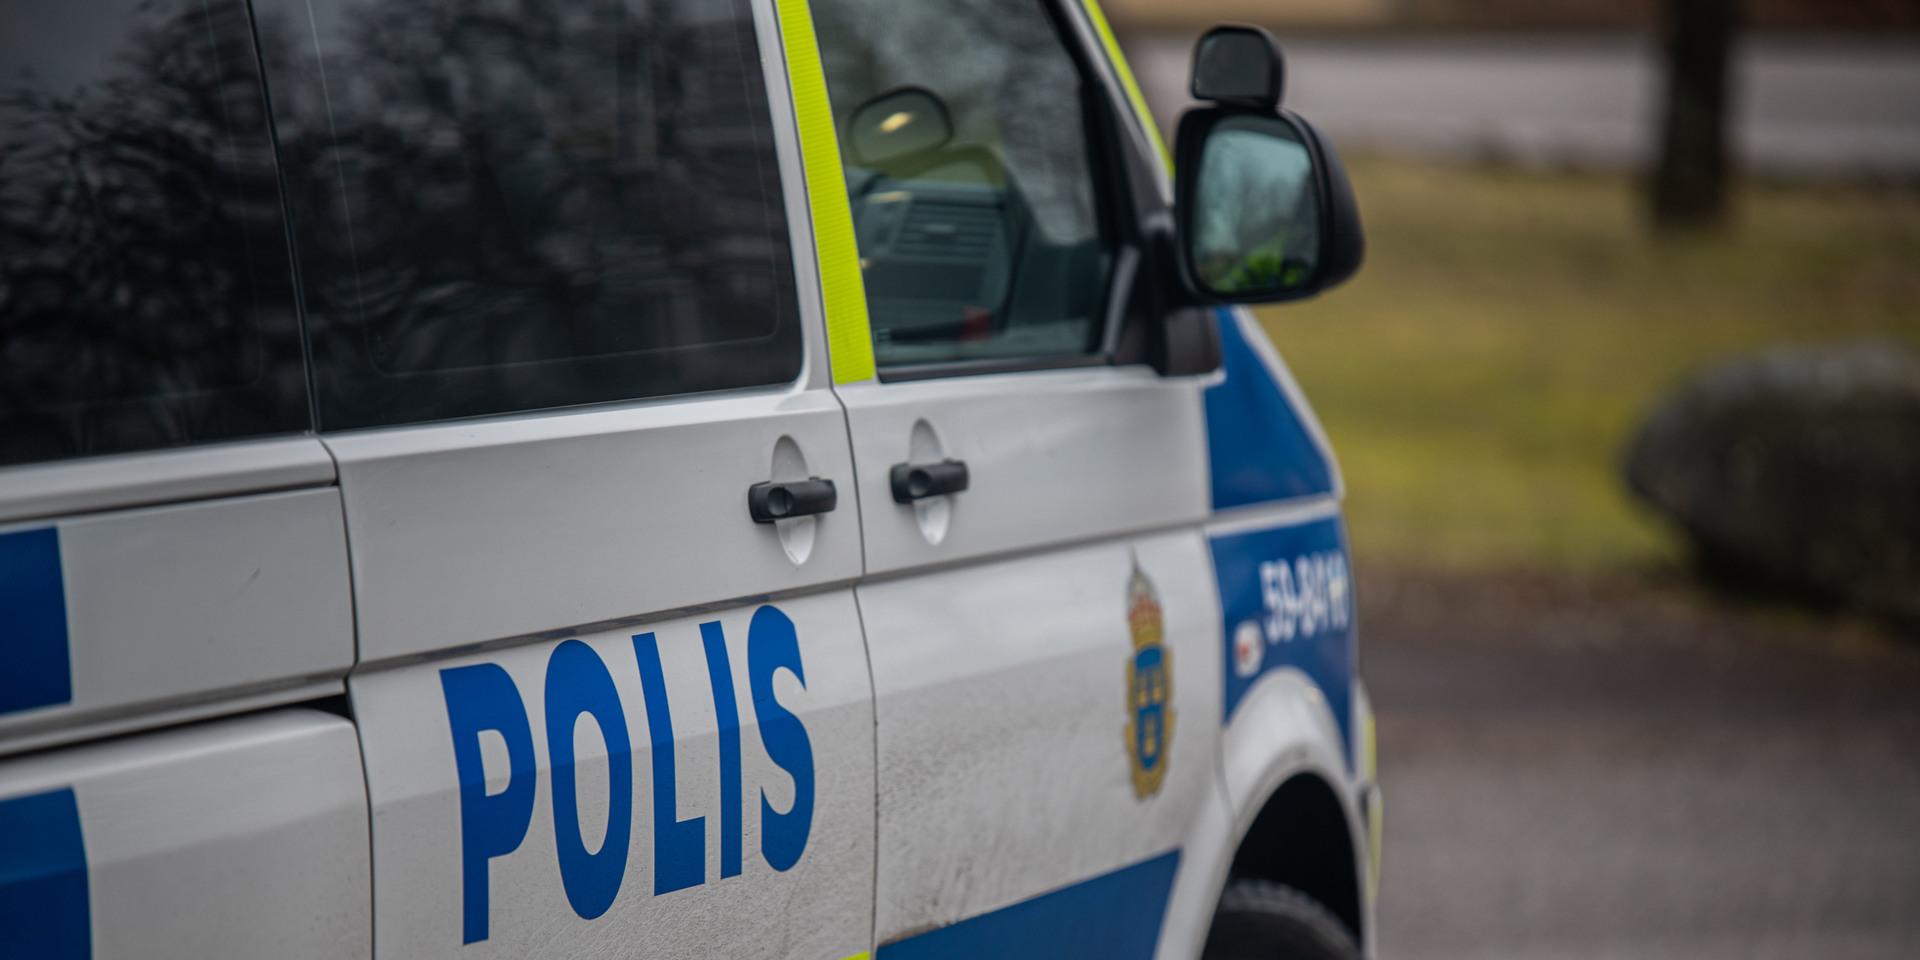 En äldre man bestals på kontanter i centrala Uddevalla. Polisen varnar för att fler kan drabbas.